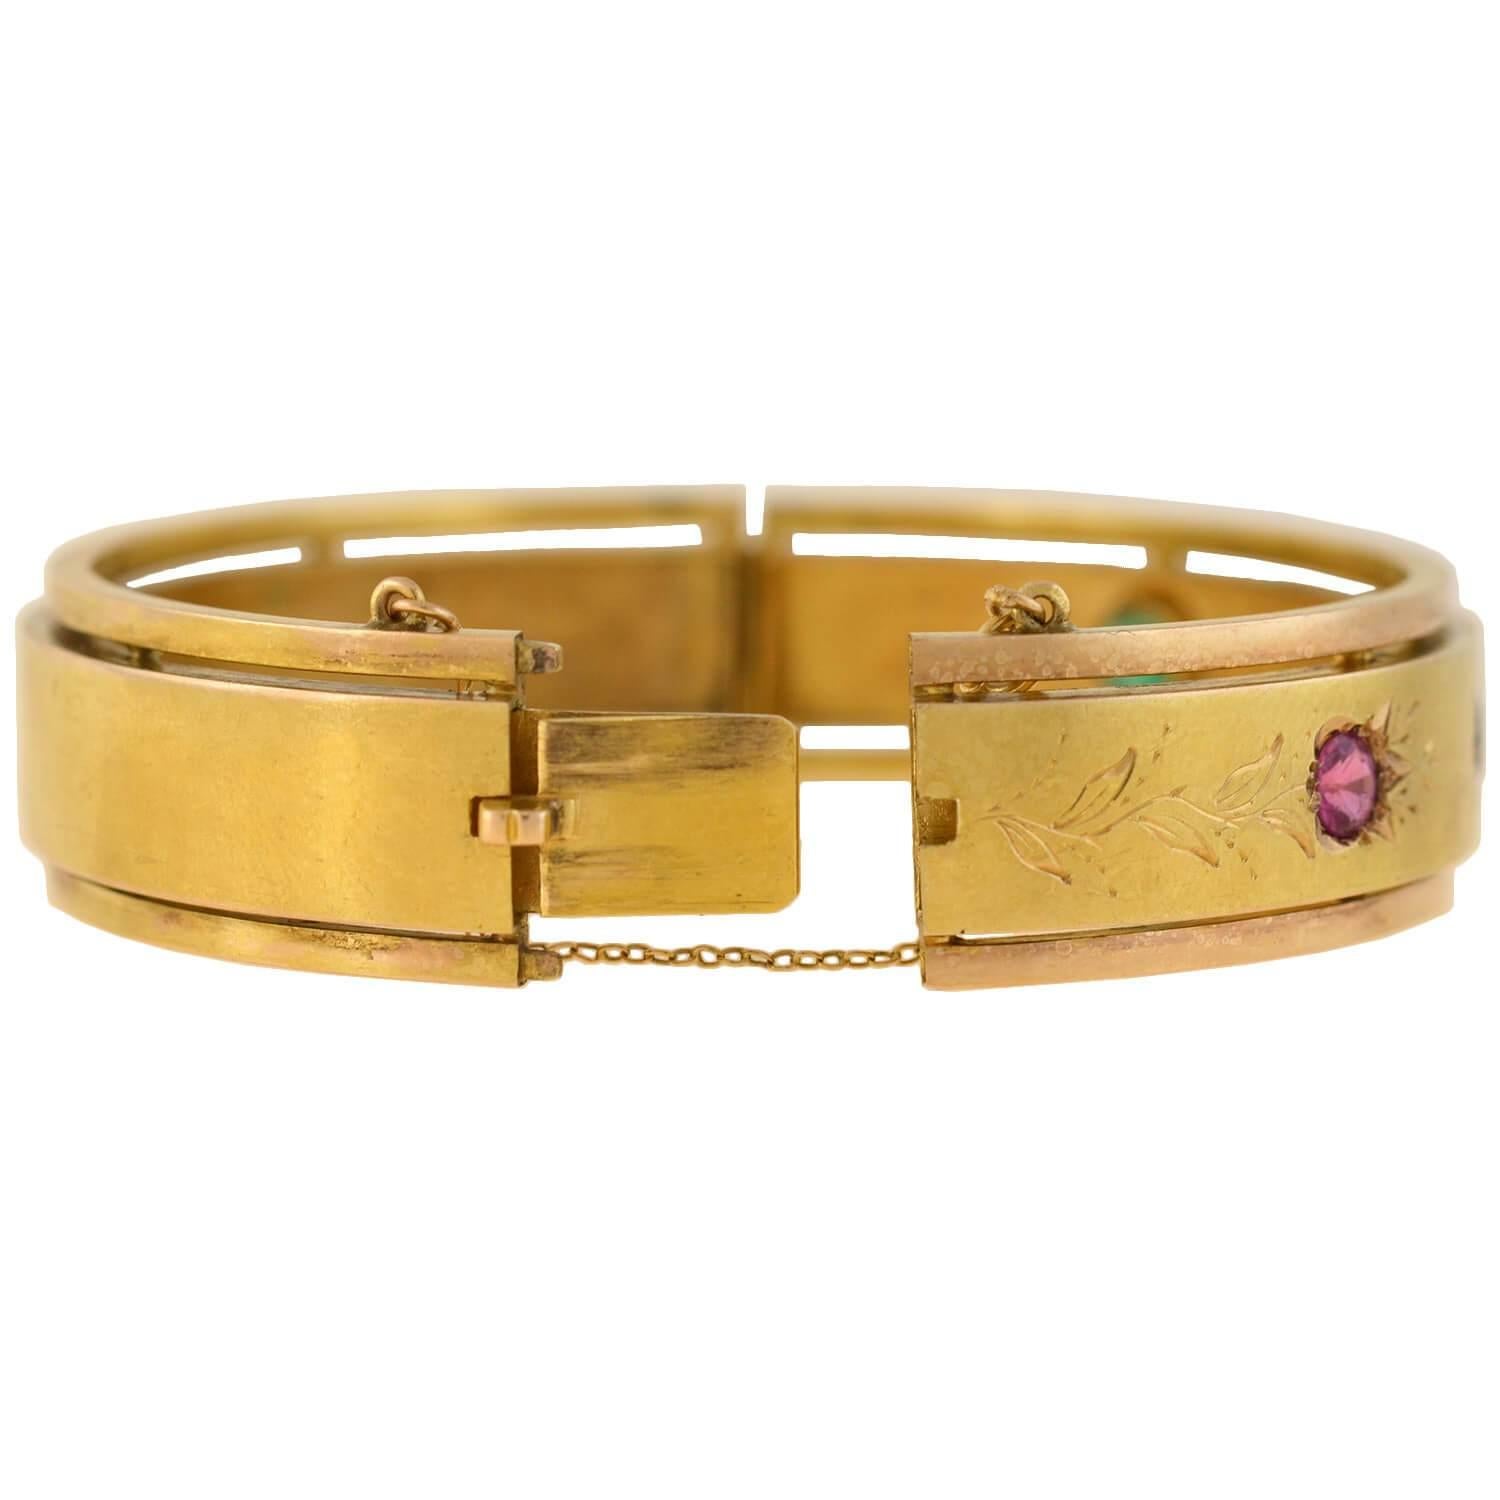 Un superbe bracelet de l'époque victorienne (ca1880) ! Réalisé en or jaune de 15 carats avec des accents en or rose, ce bracelet est orné de quatre pierres précieuses à facettes sur le devant. Un diamant taille ancienne et un riche saphir bleu